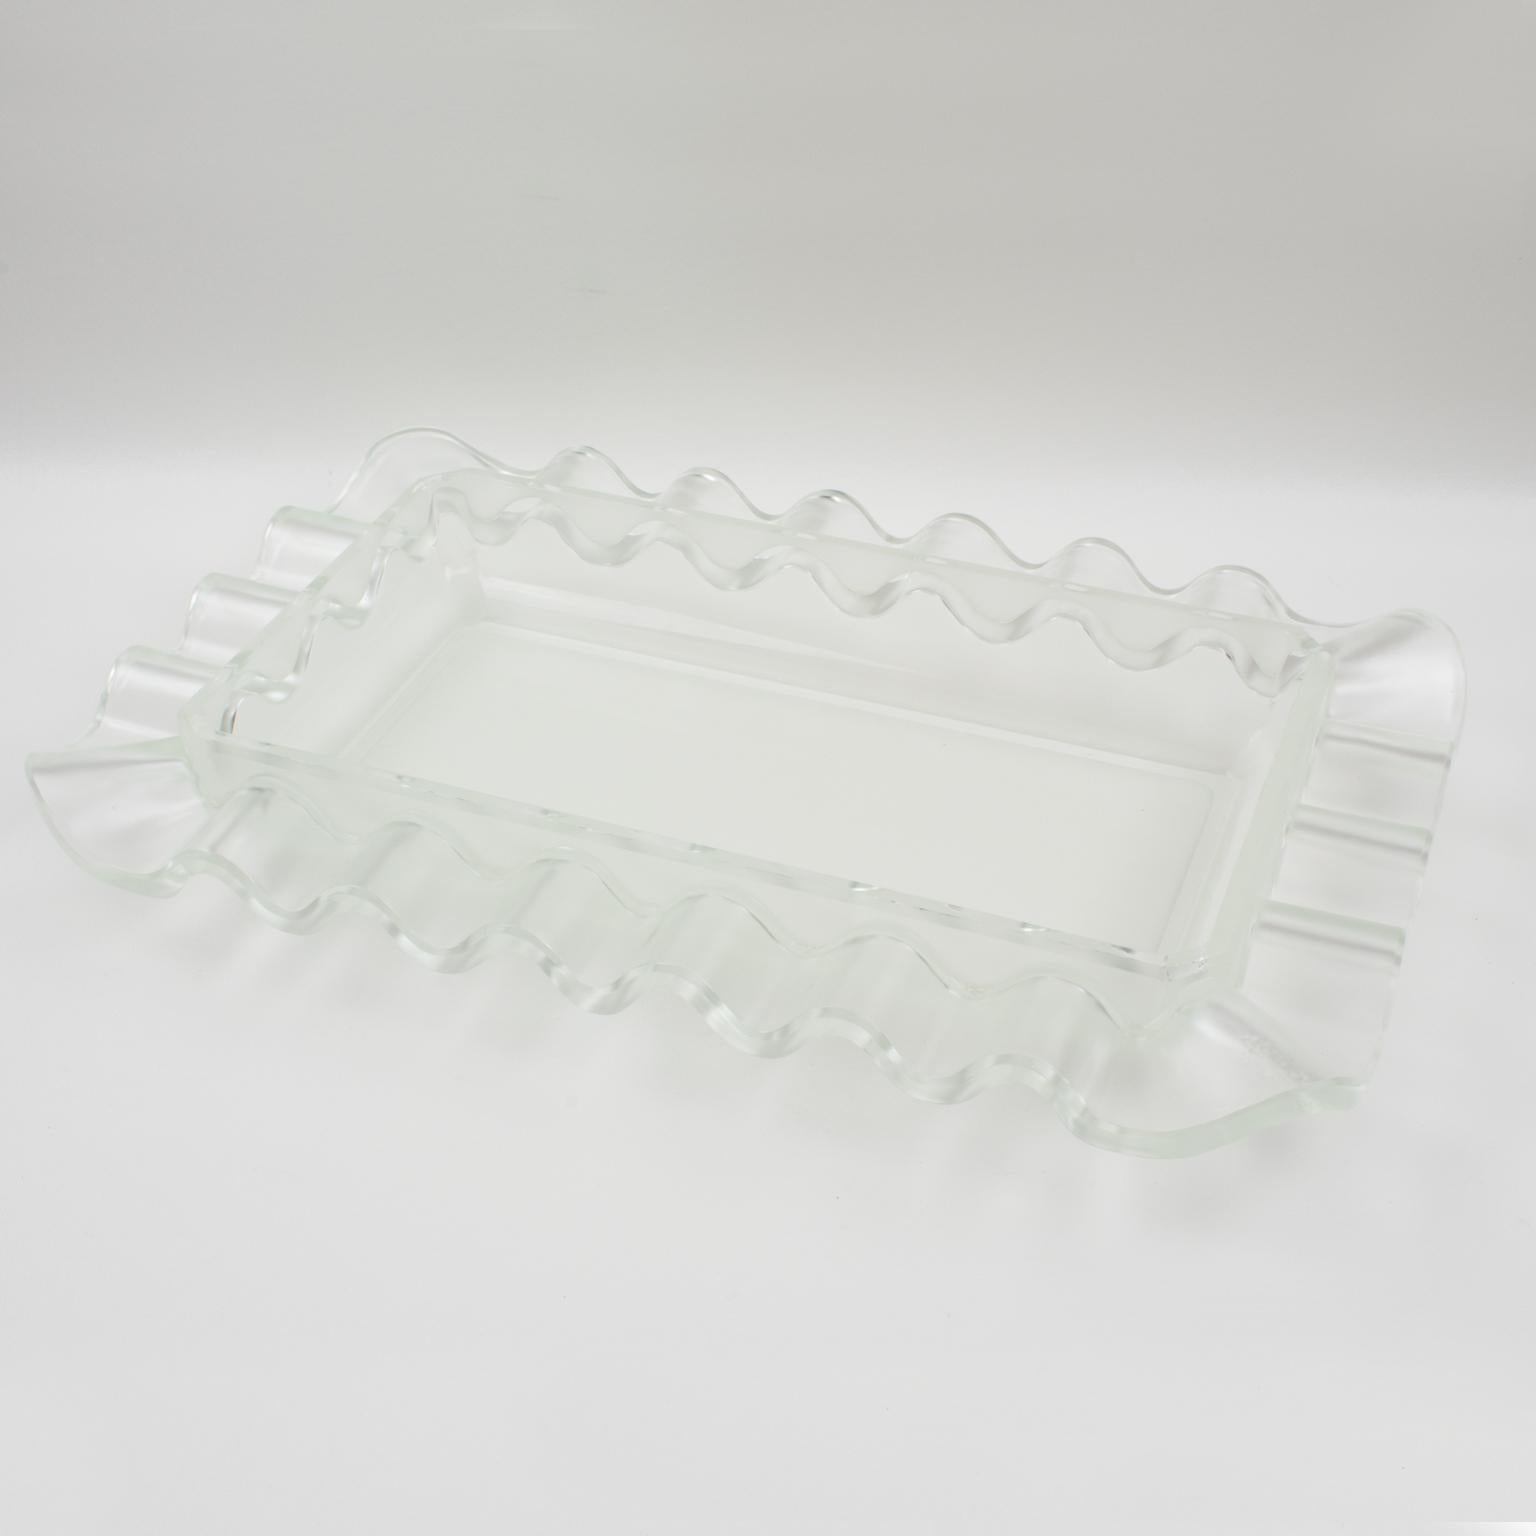 Cette exquise coupe de centre de table Art déco fabriquée par Verlys, France, présente un étonnant motif givré avec un dessin géométrique ondulé. Produit par Les Verreries d'Art Verlys & des Hanots - S.A. Holophane, Paris, ce grand bol en verre